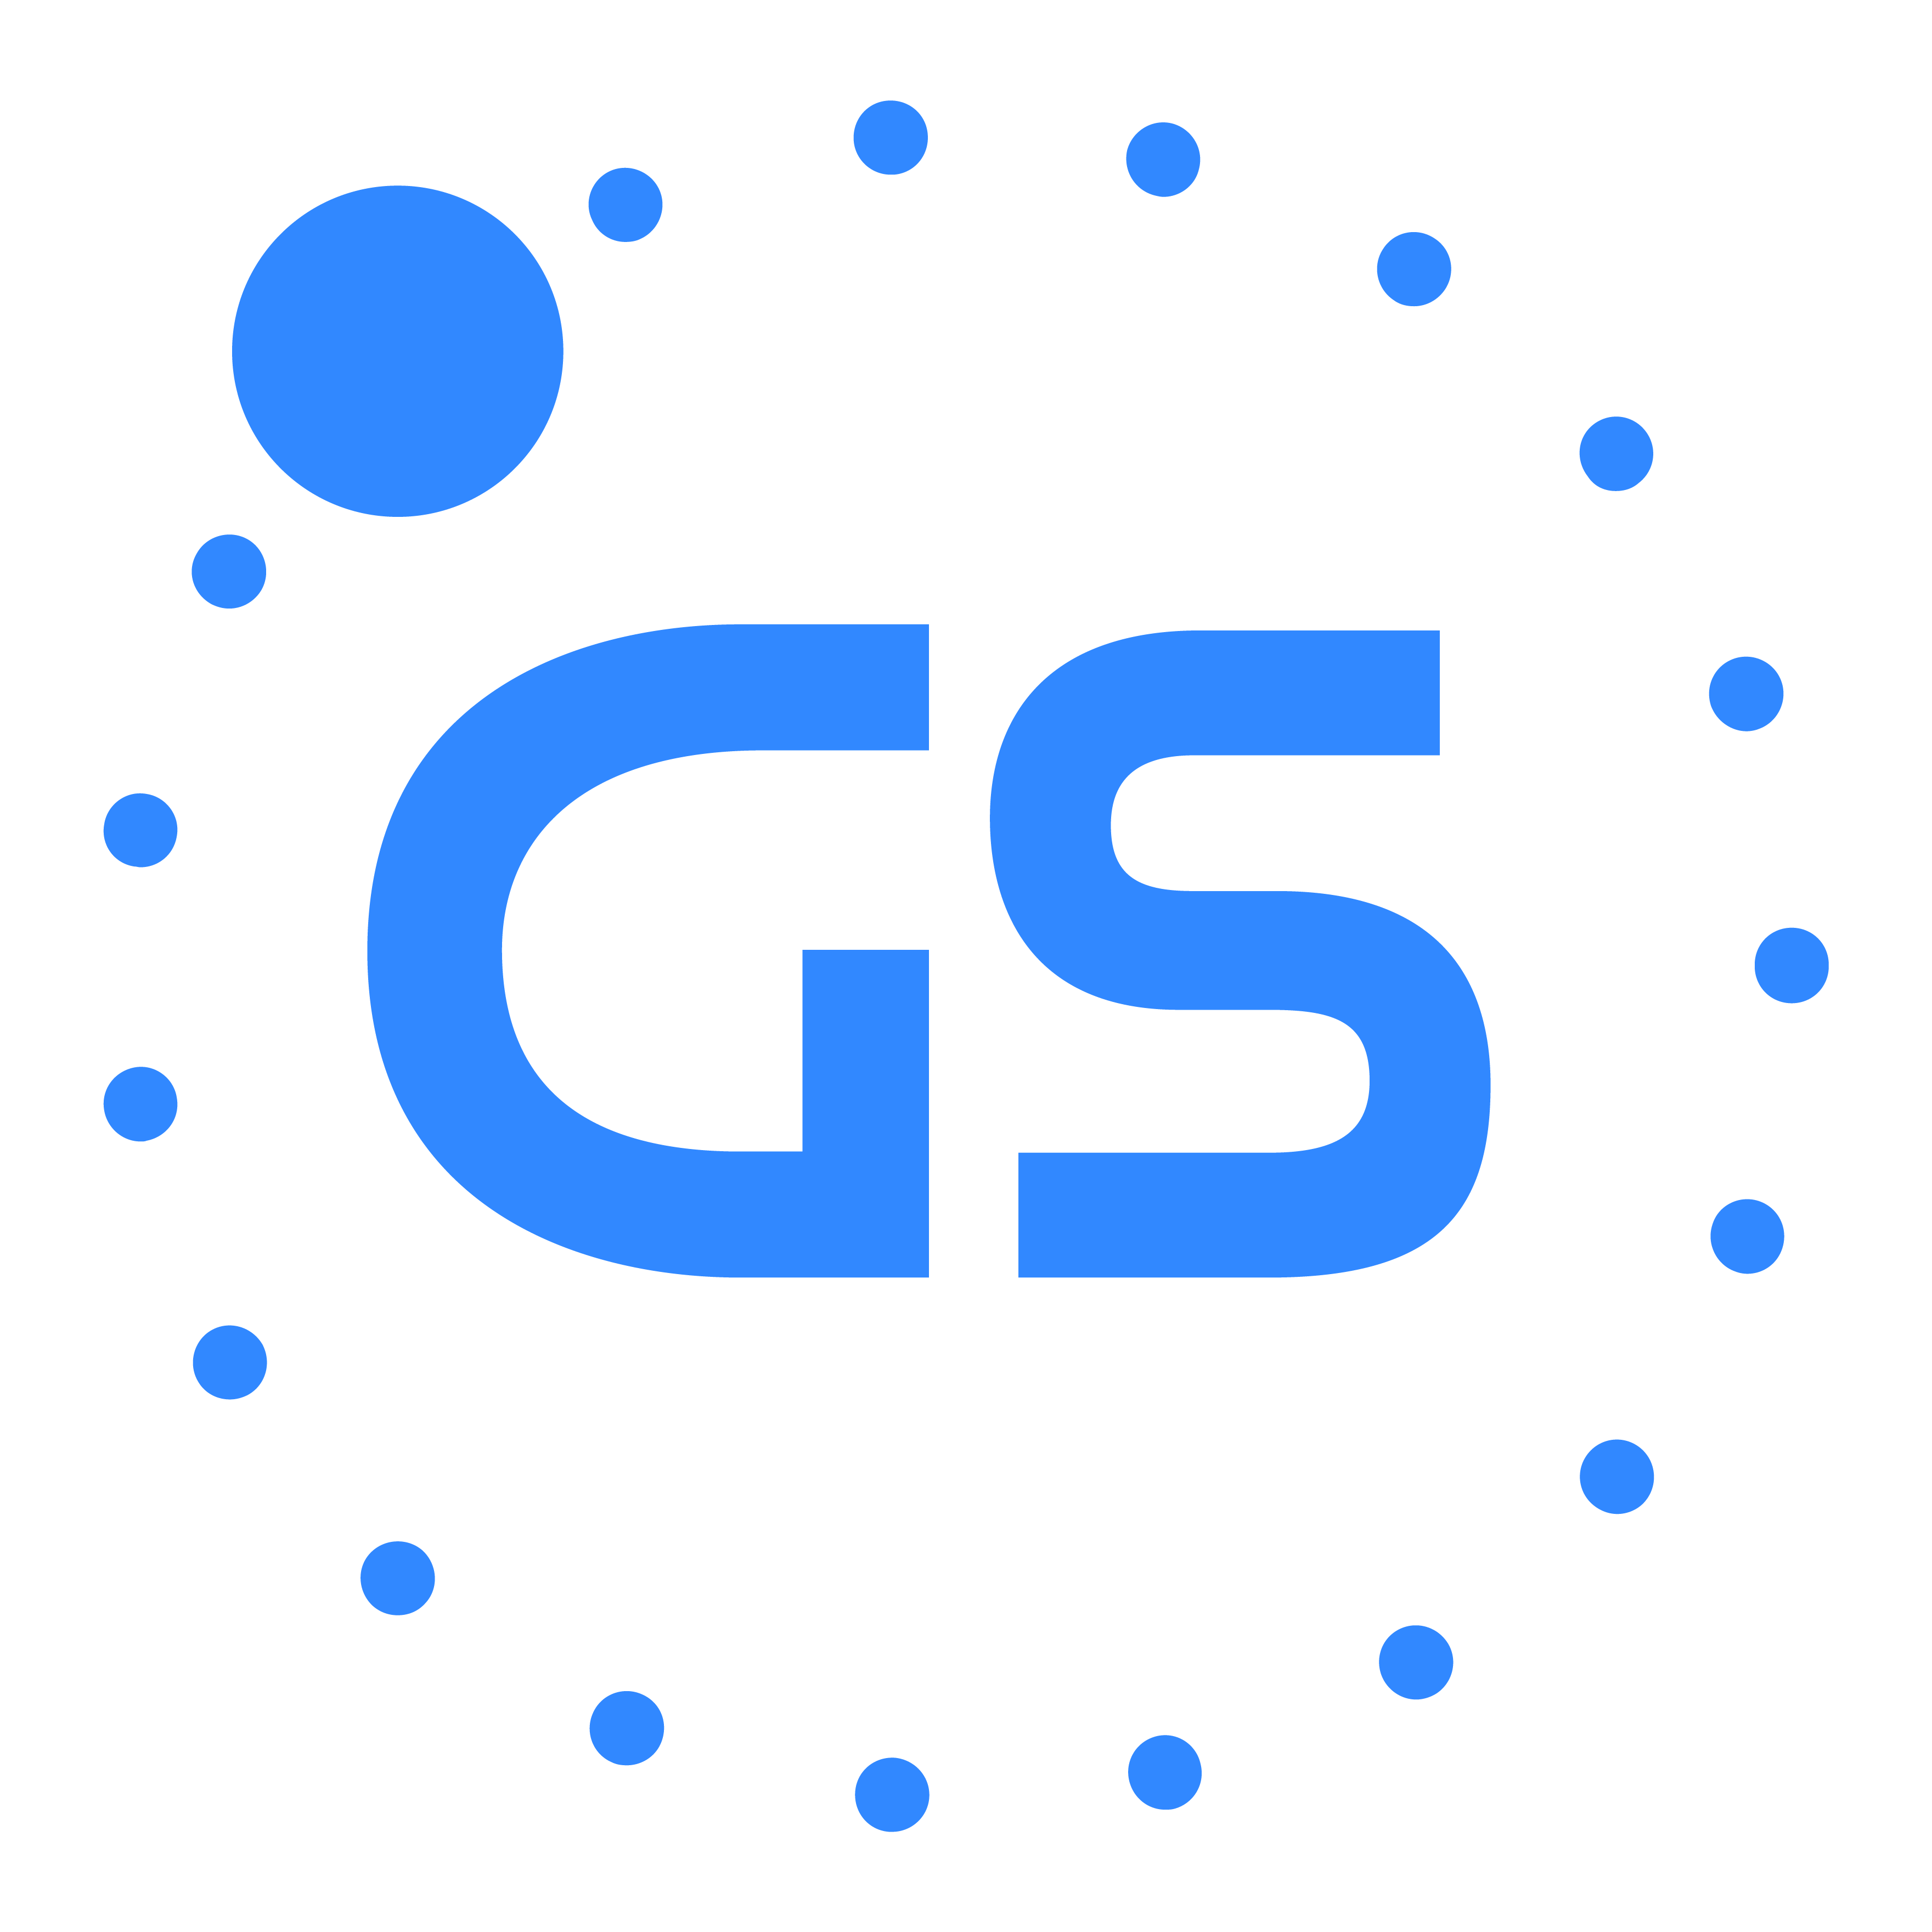 Galaxsys logo